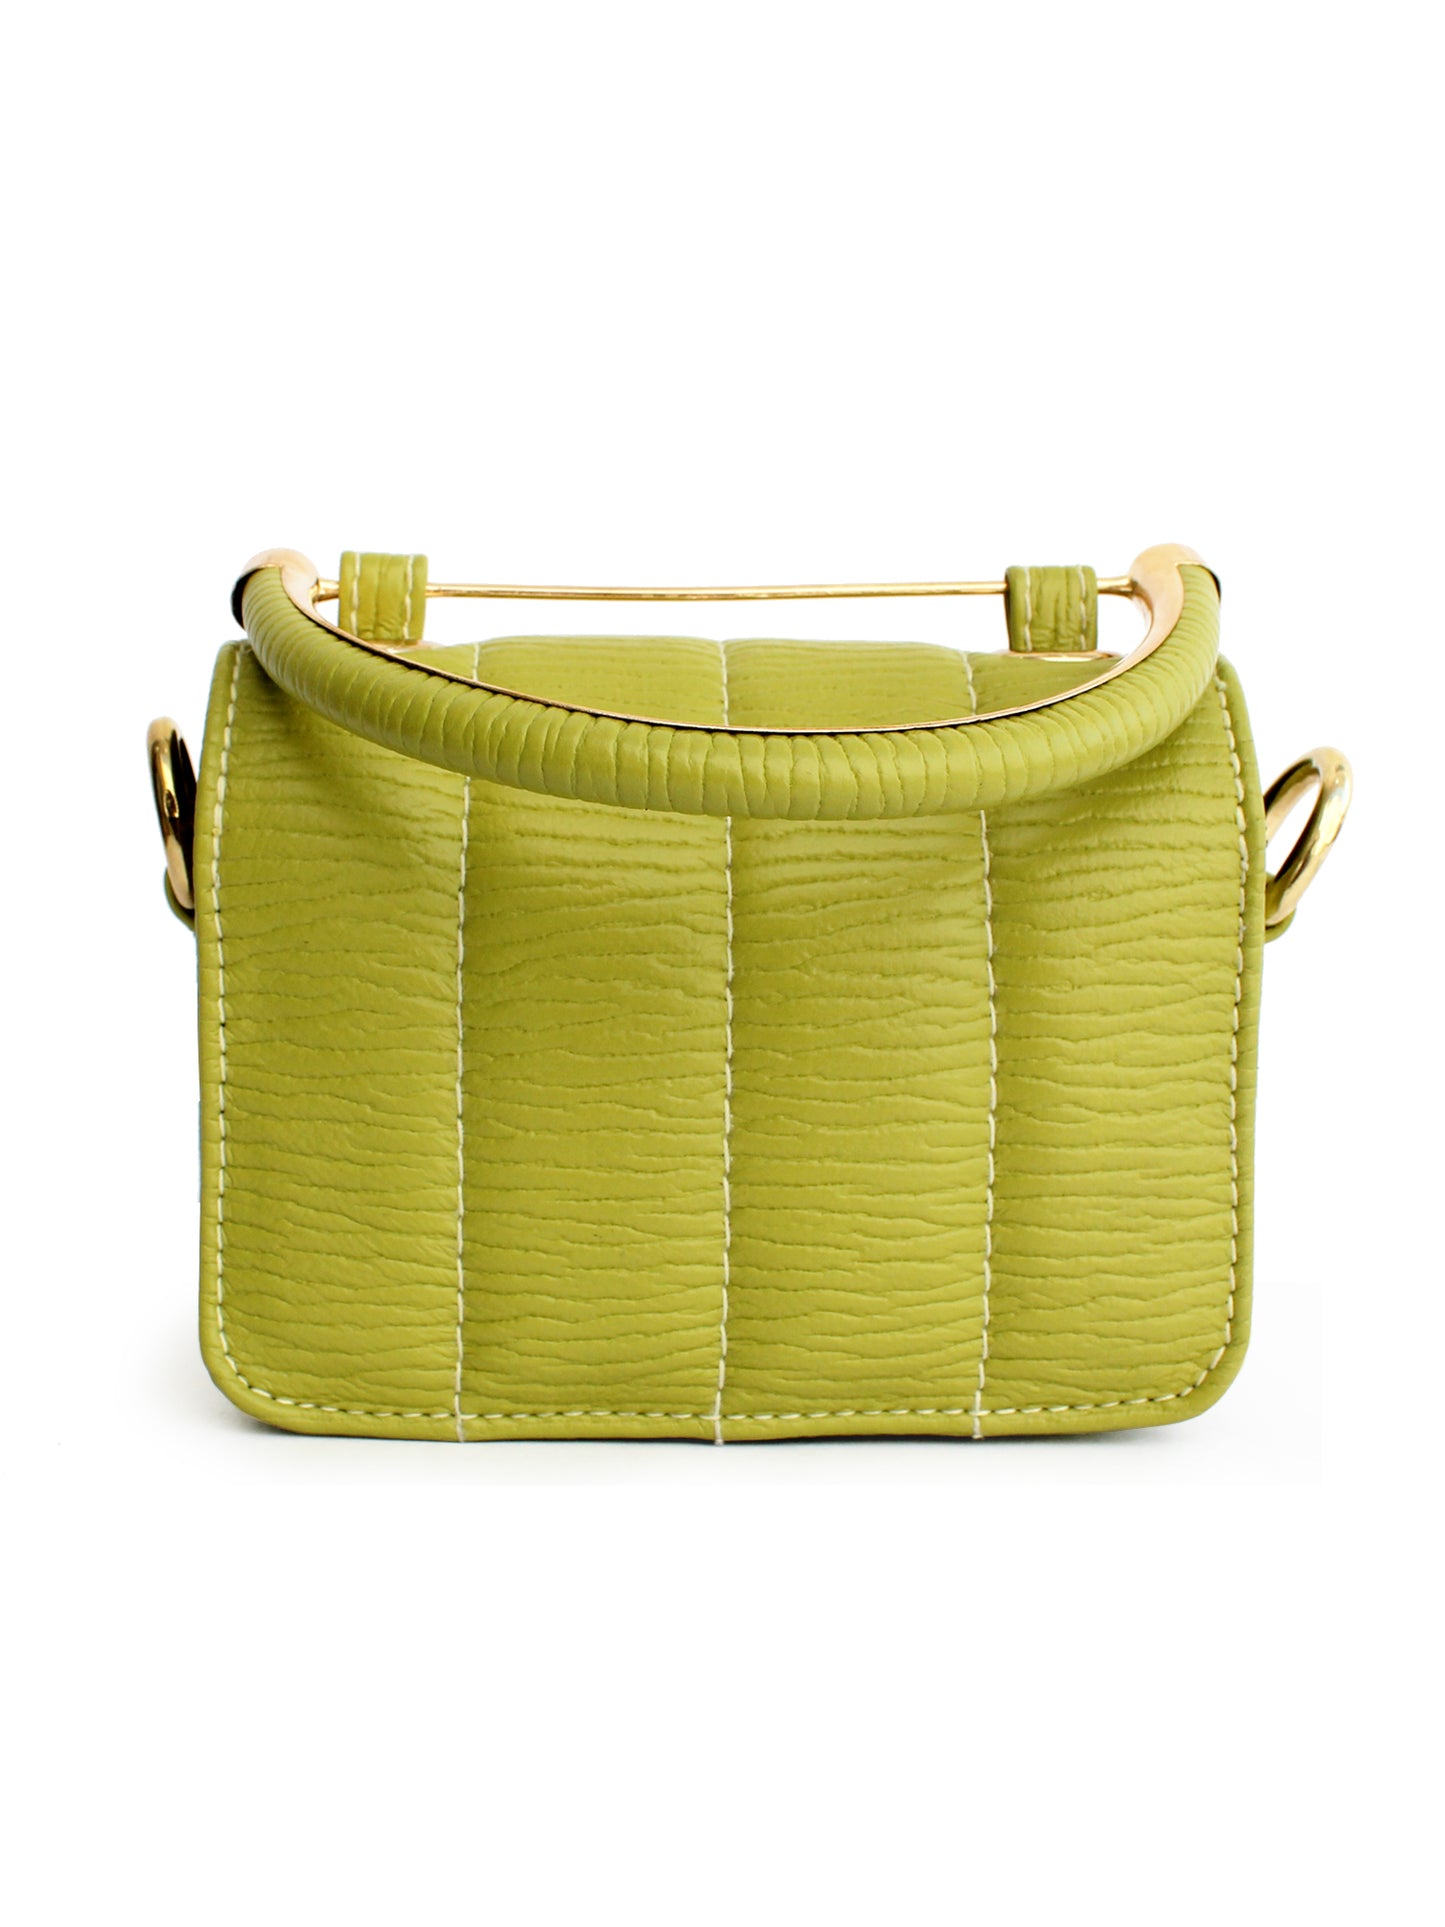 Nano Lime Green Mini Box Bag | Modern Myth